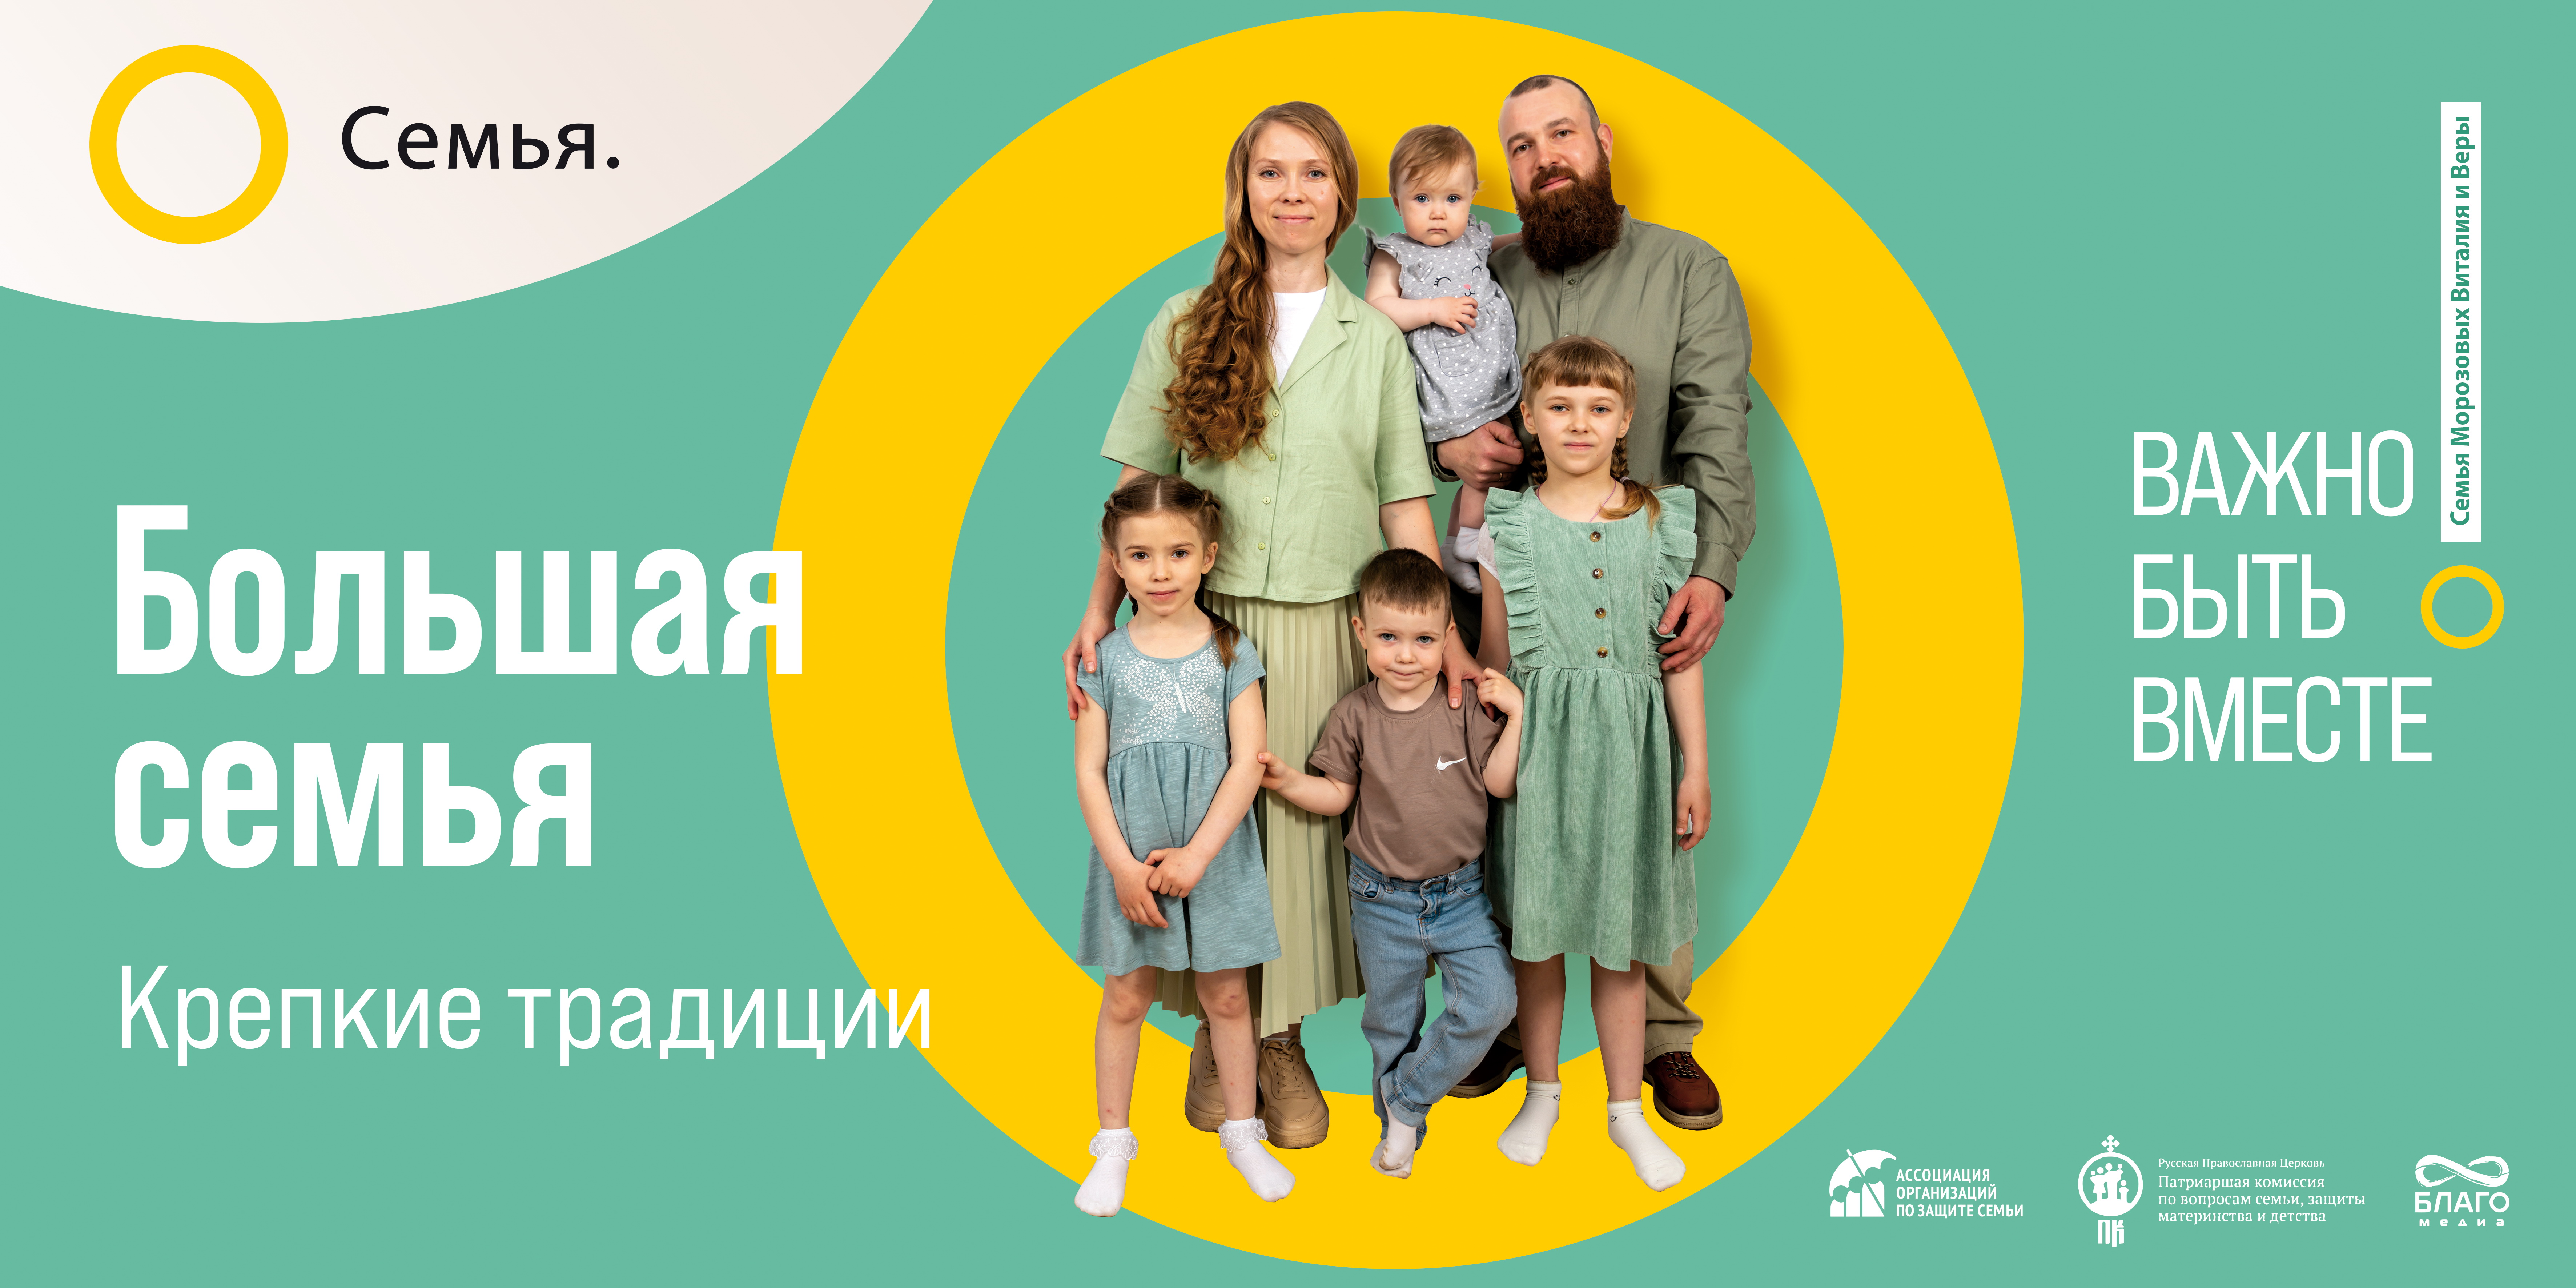 Многодетные семьи Вологодской области приняли участие во Всероссийском проекте "Семья - основа мира"